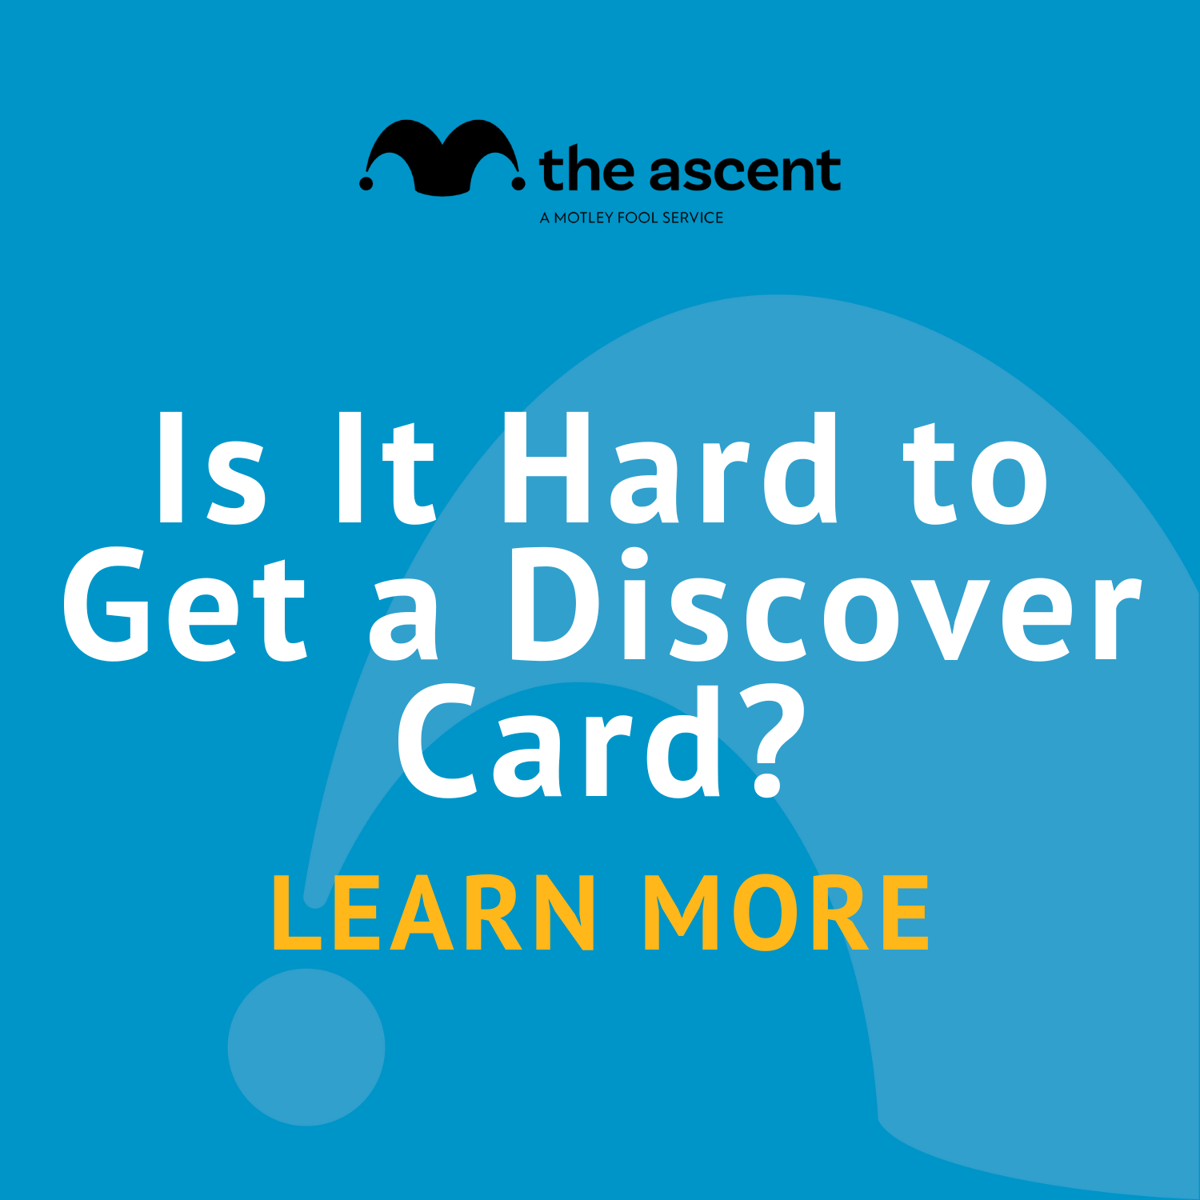 Jak těžké je objevit kartu?